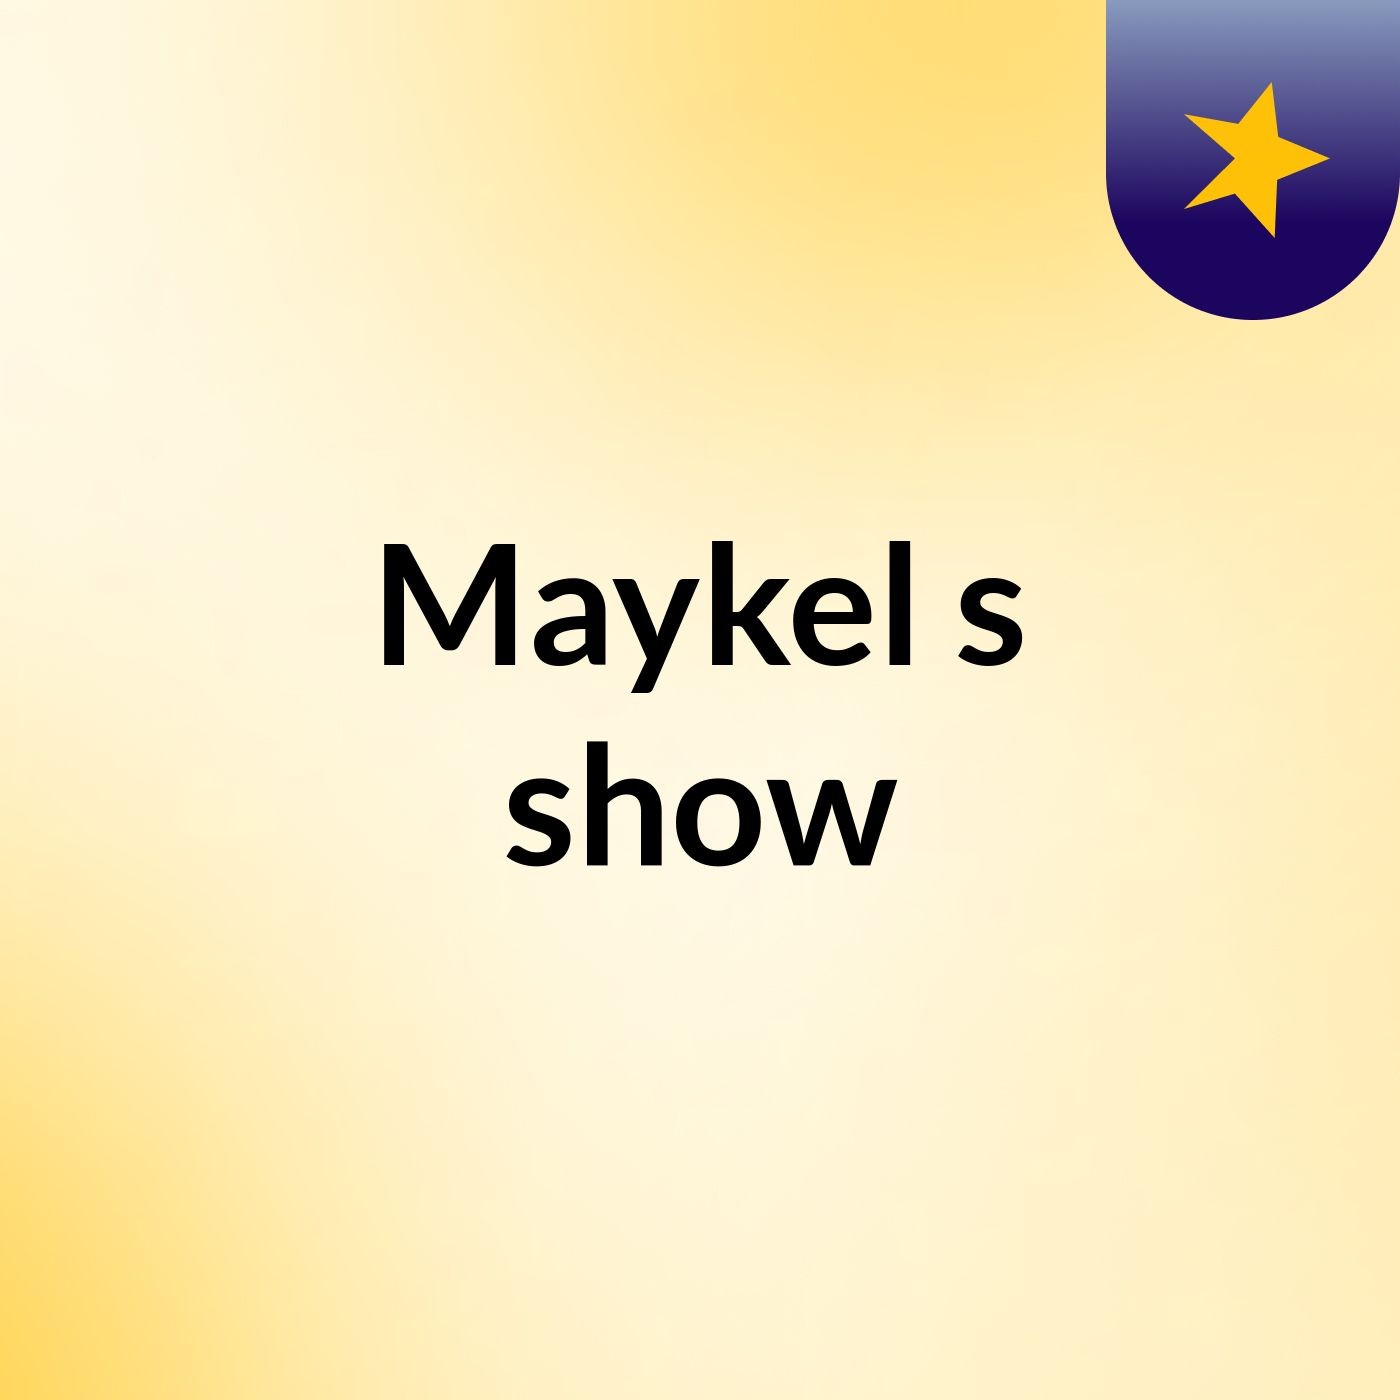 Maykel's show